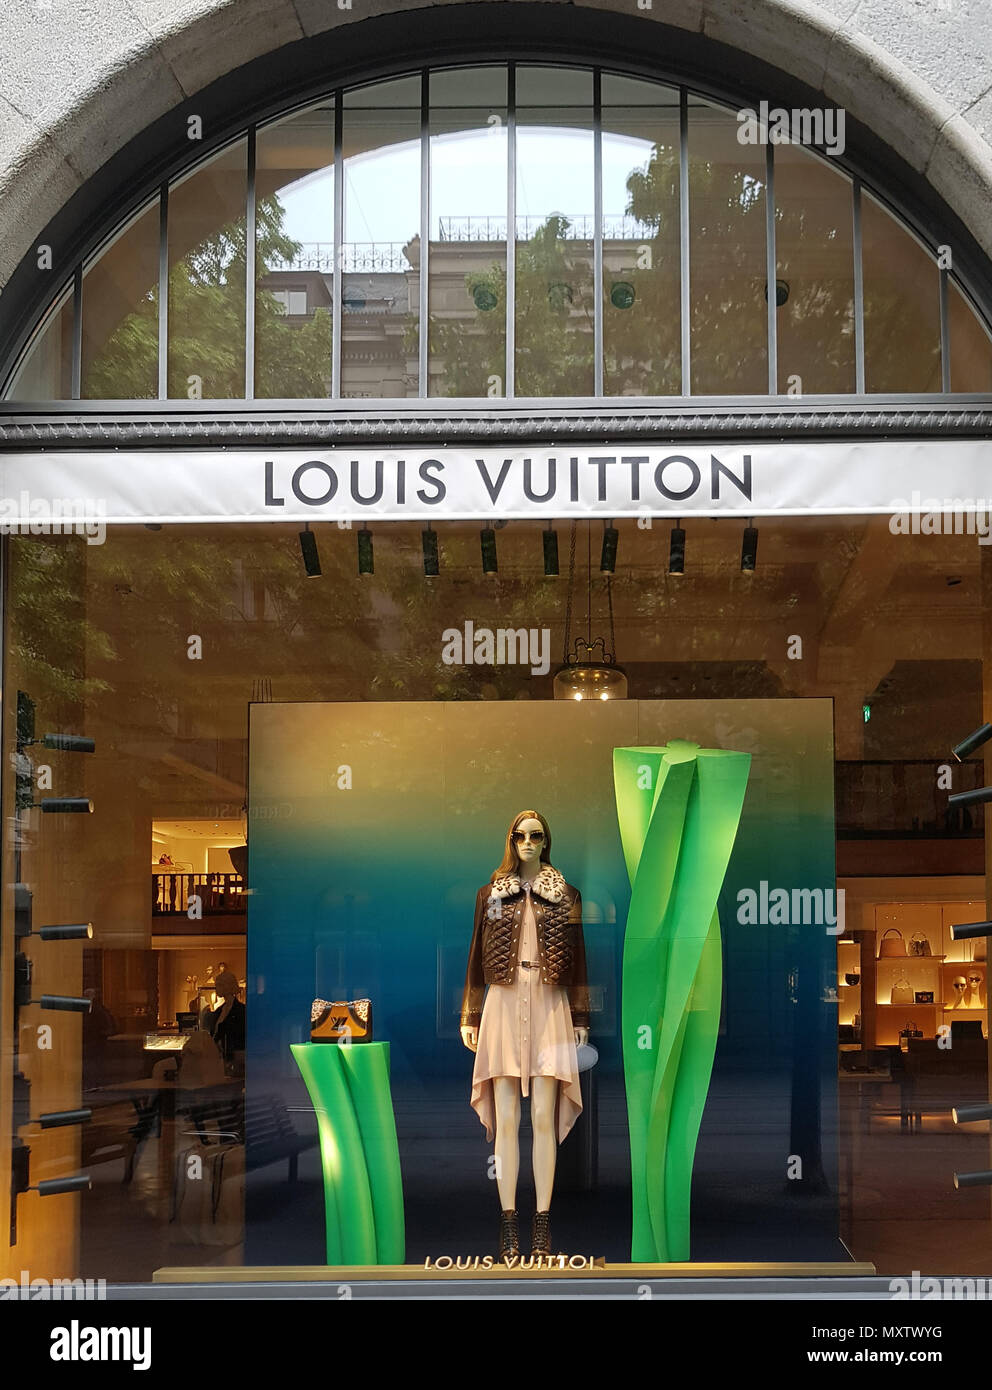 Louis Vuitton Zurich Store in Zurich, Switzerland